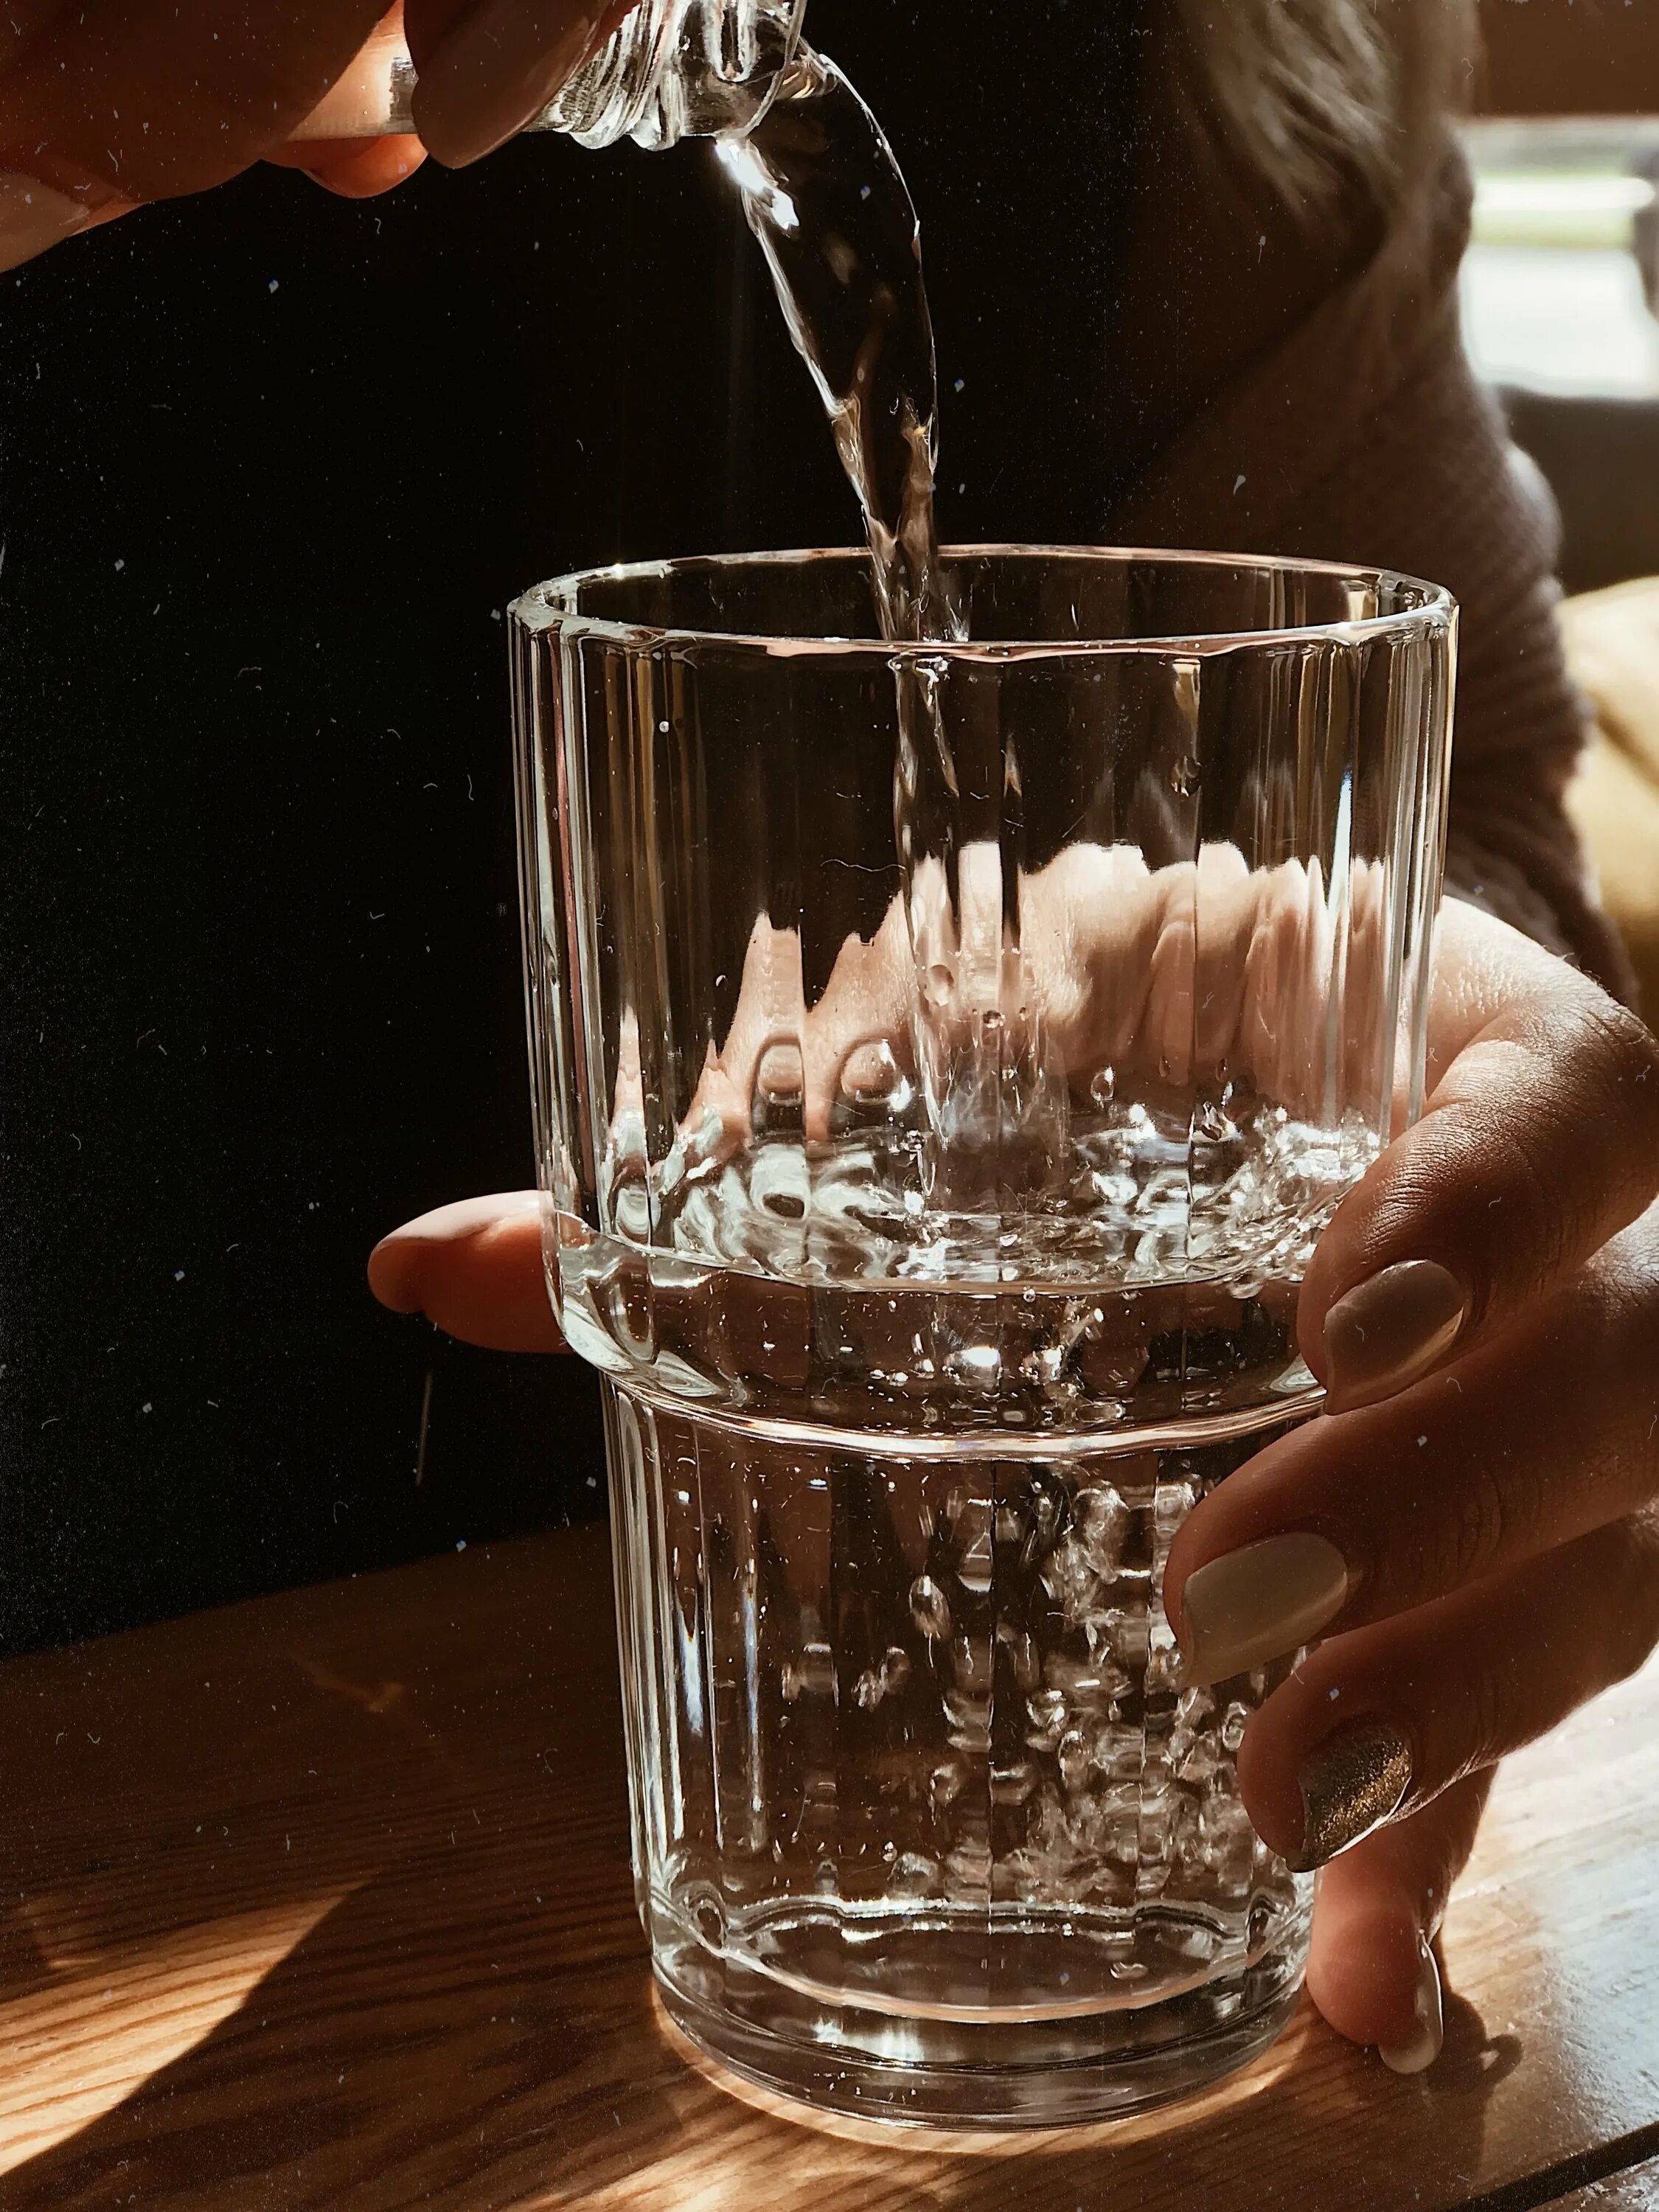 Стакан питьевой воды. Стакан воды. Стакан воды Эстетика. Эстетичный стакан воды. Красивые стаканы для воды.